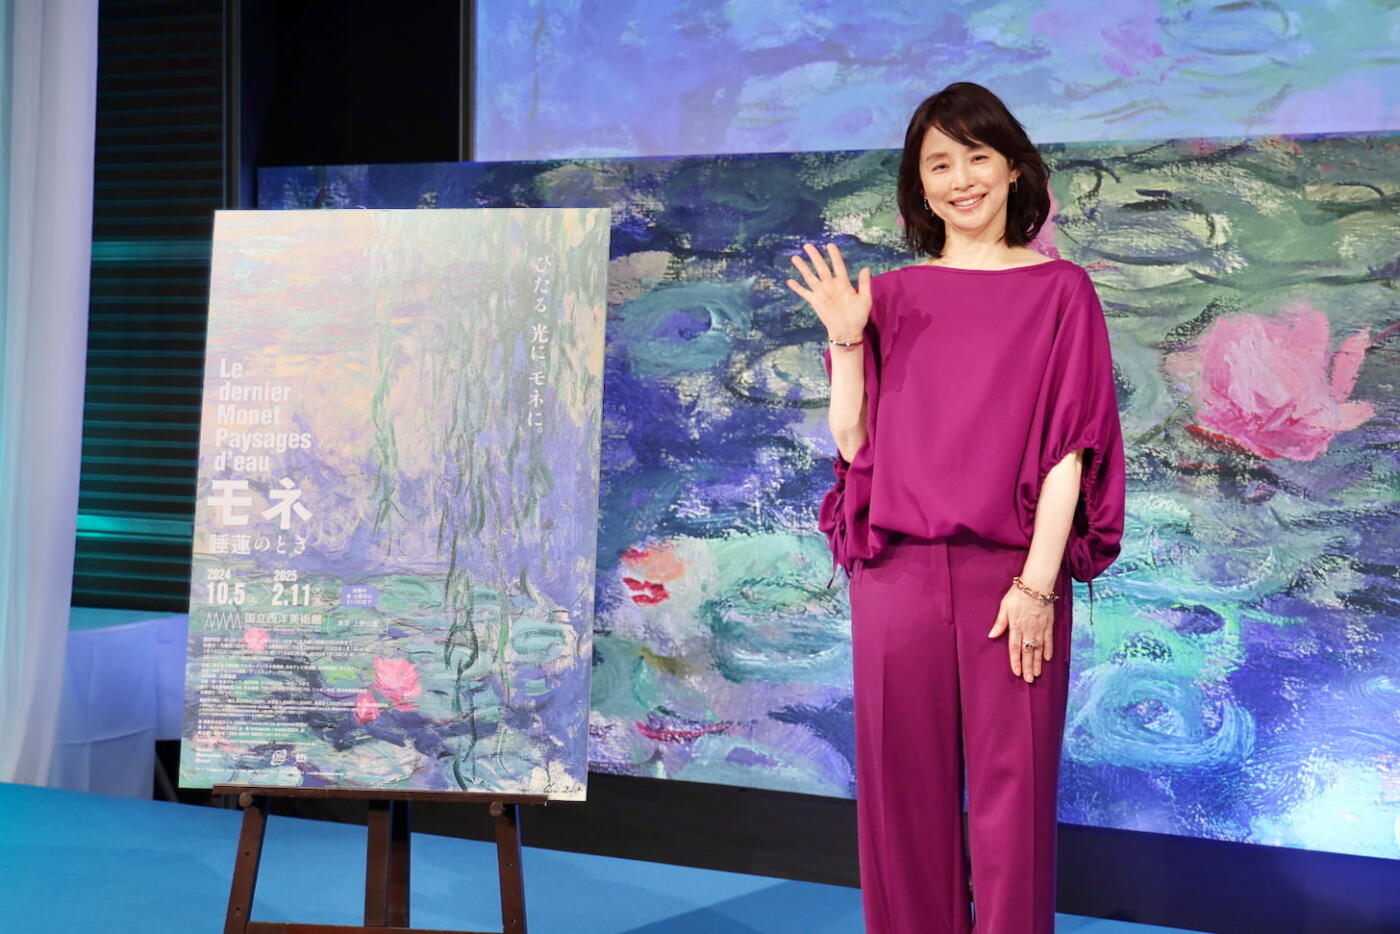 石田ゆり子さん「モネはとても特別な存在」展覧会「モネ 睡蓮のとき」アンバサダー就任で思いを語る